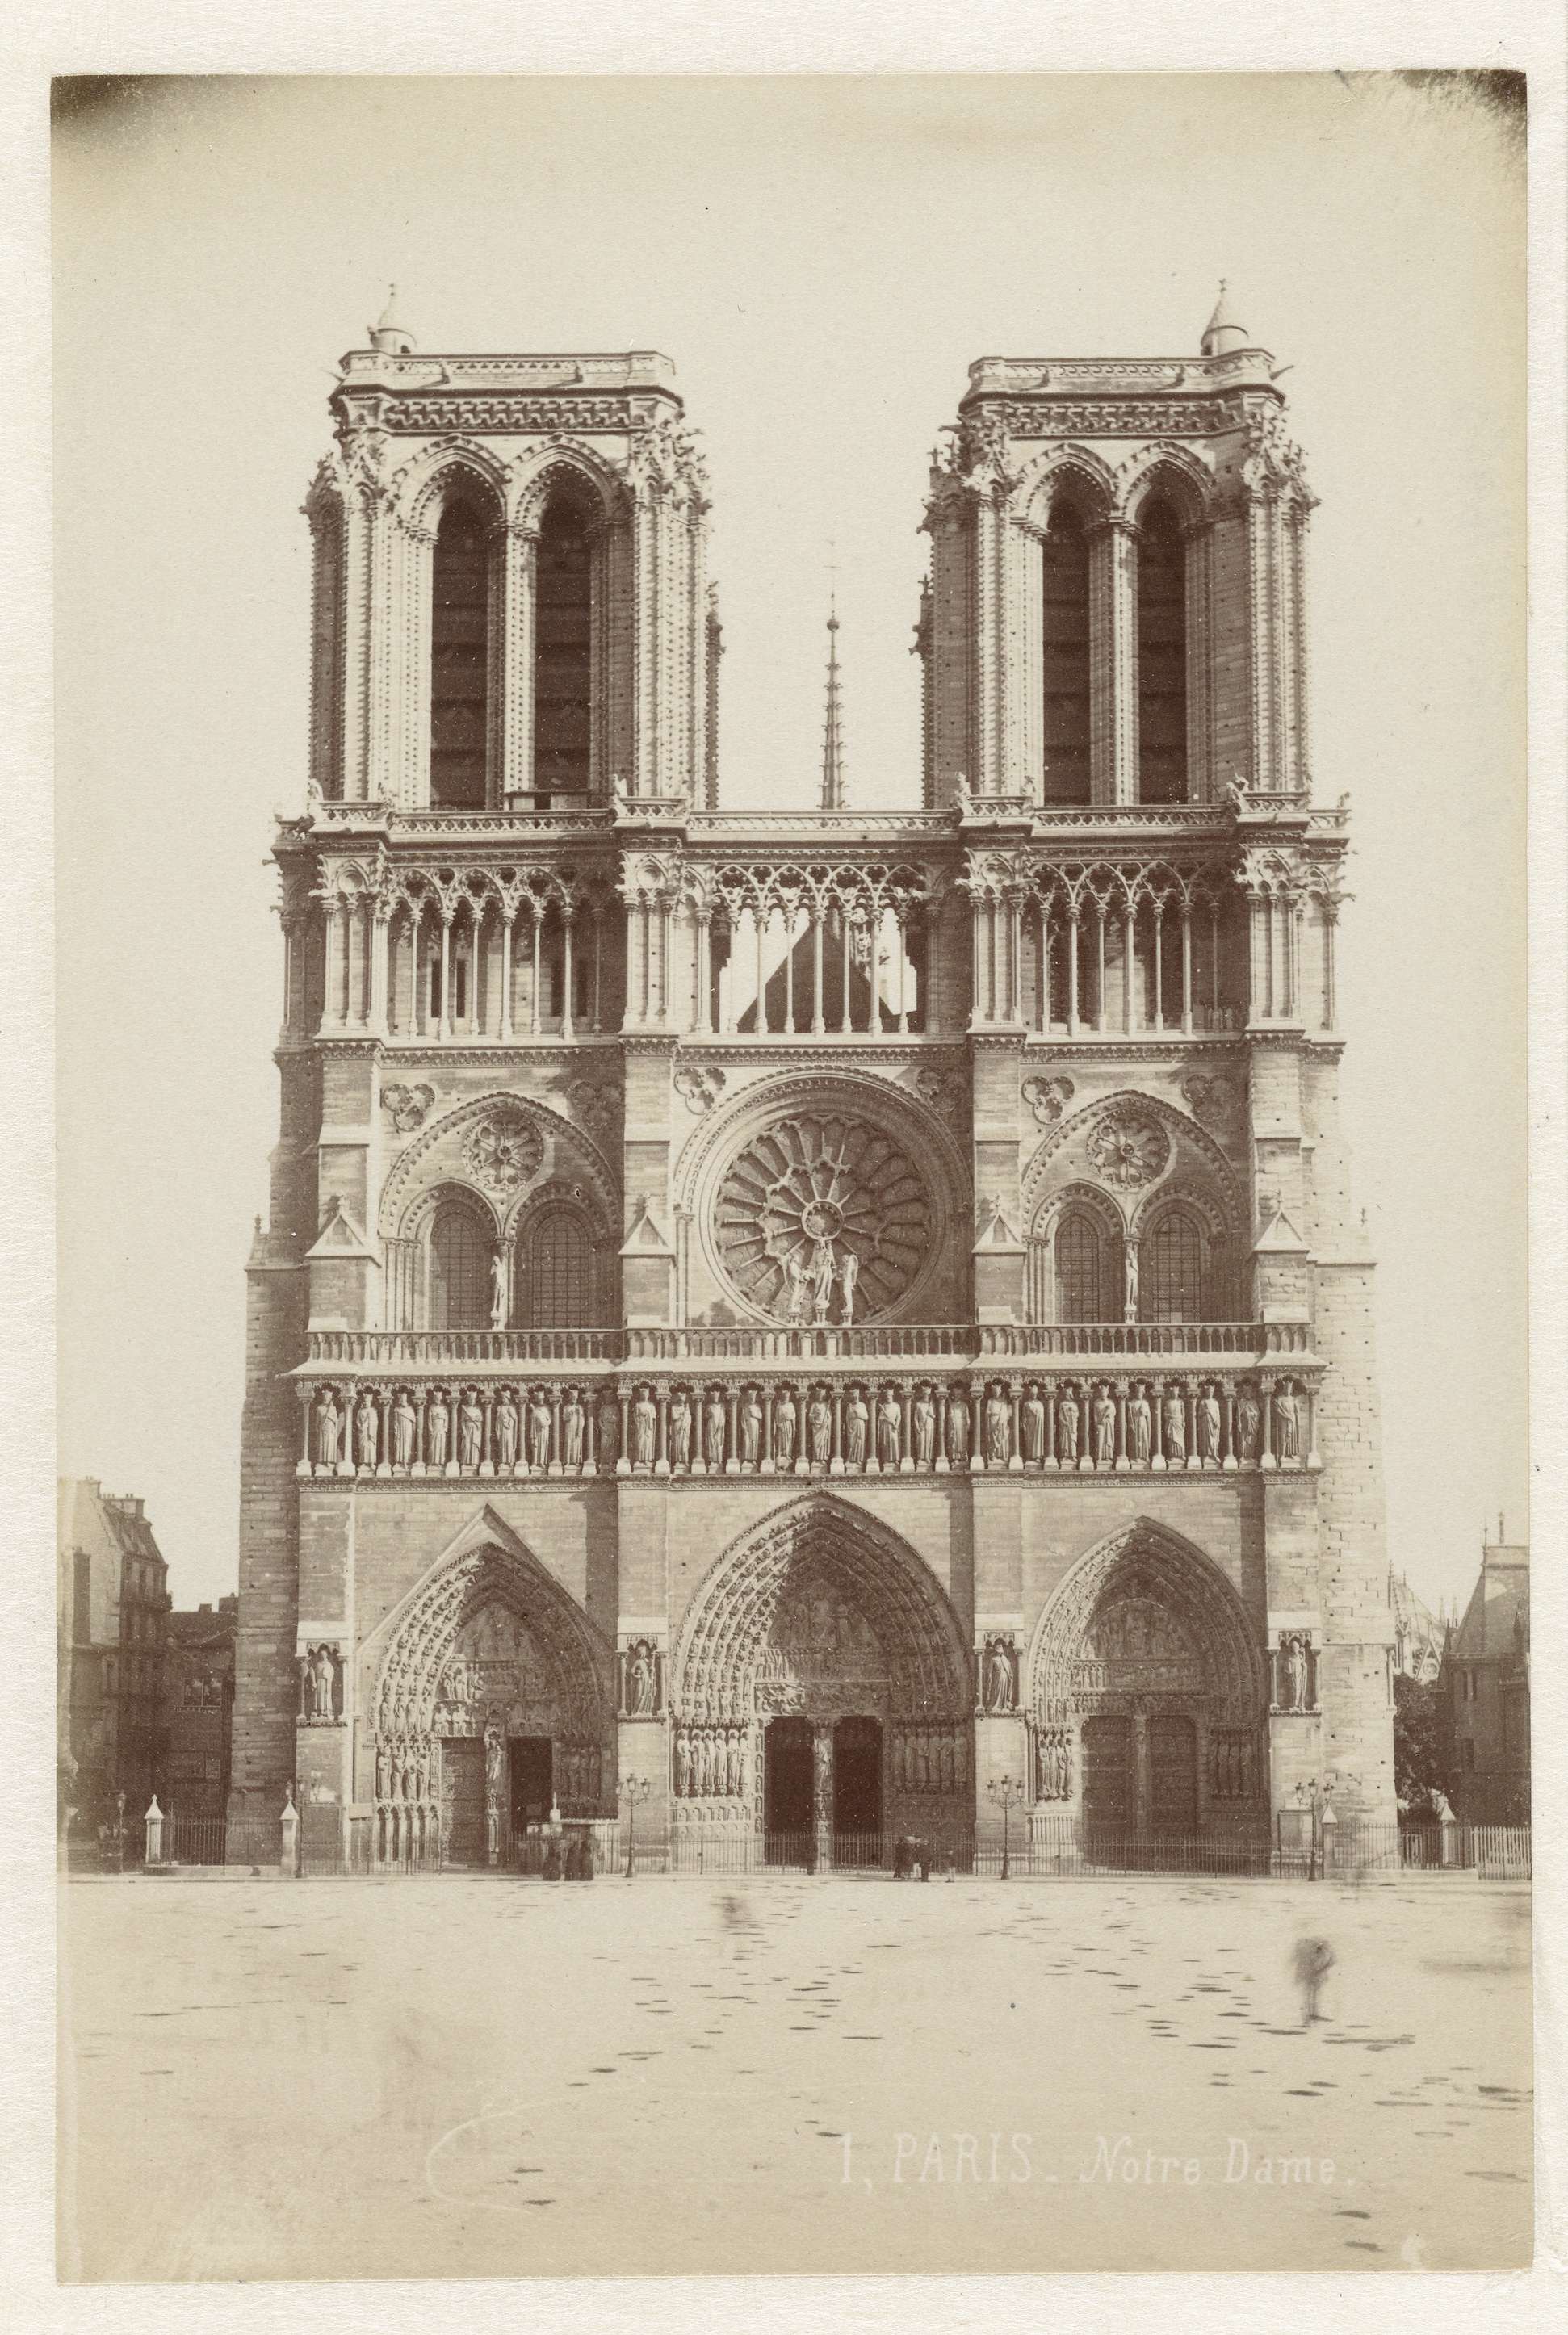 1, Paris Notre Dame, Notre Dame in Paris